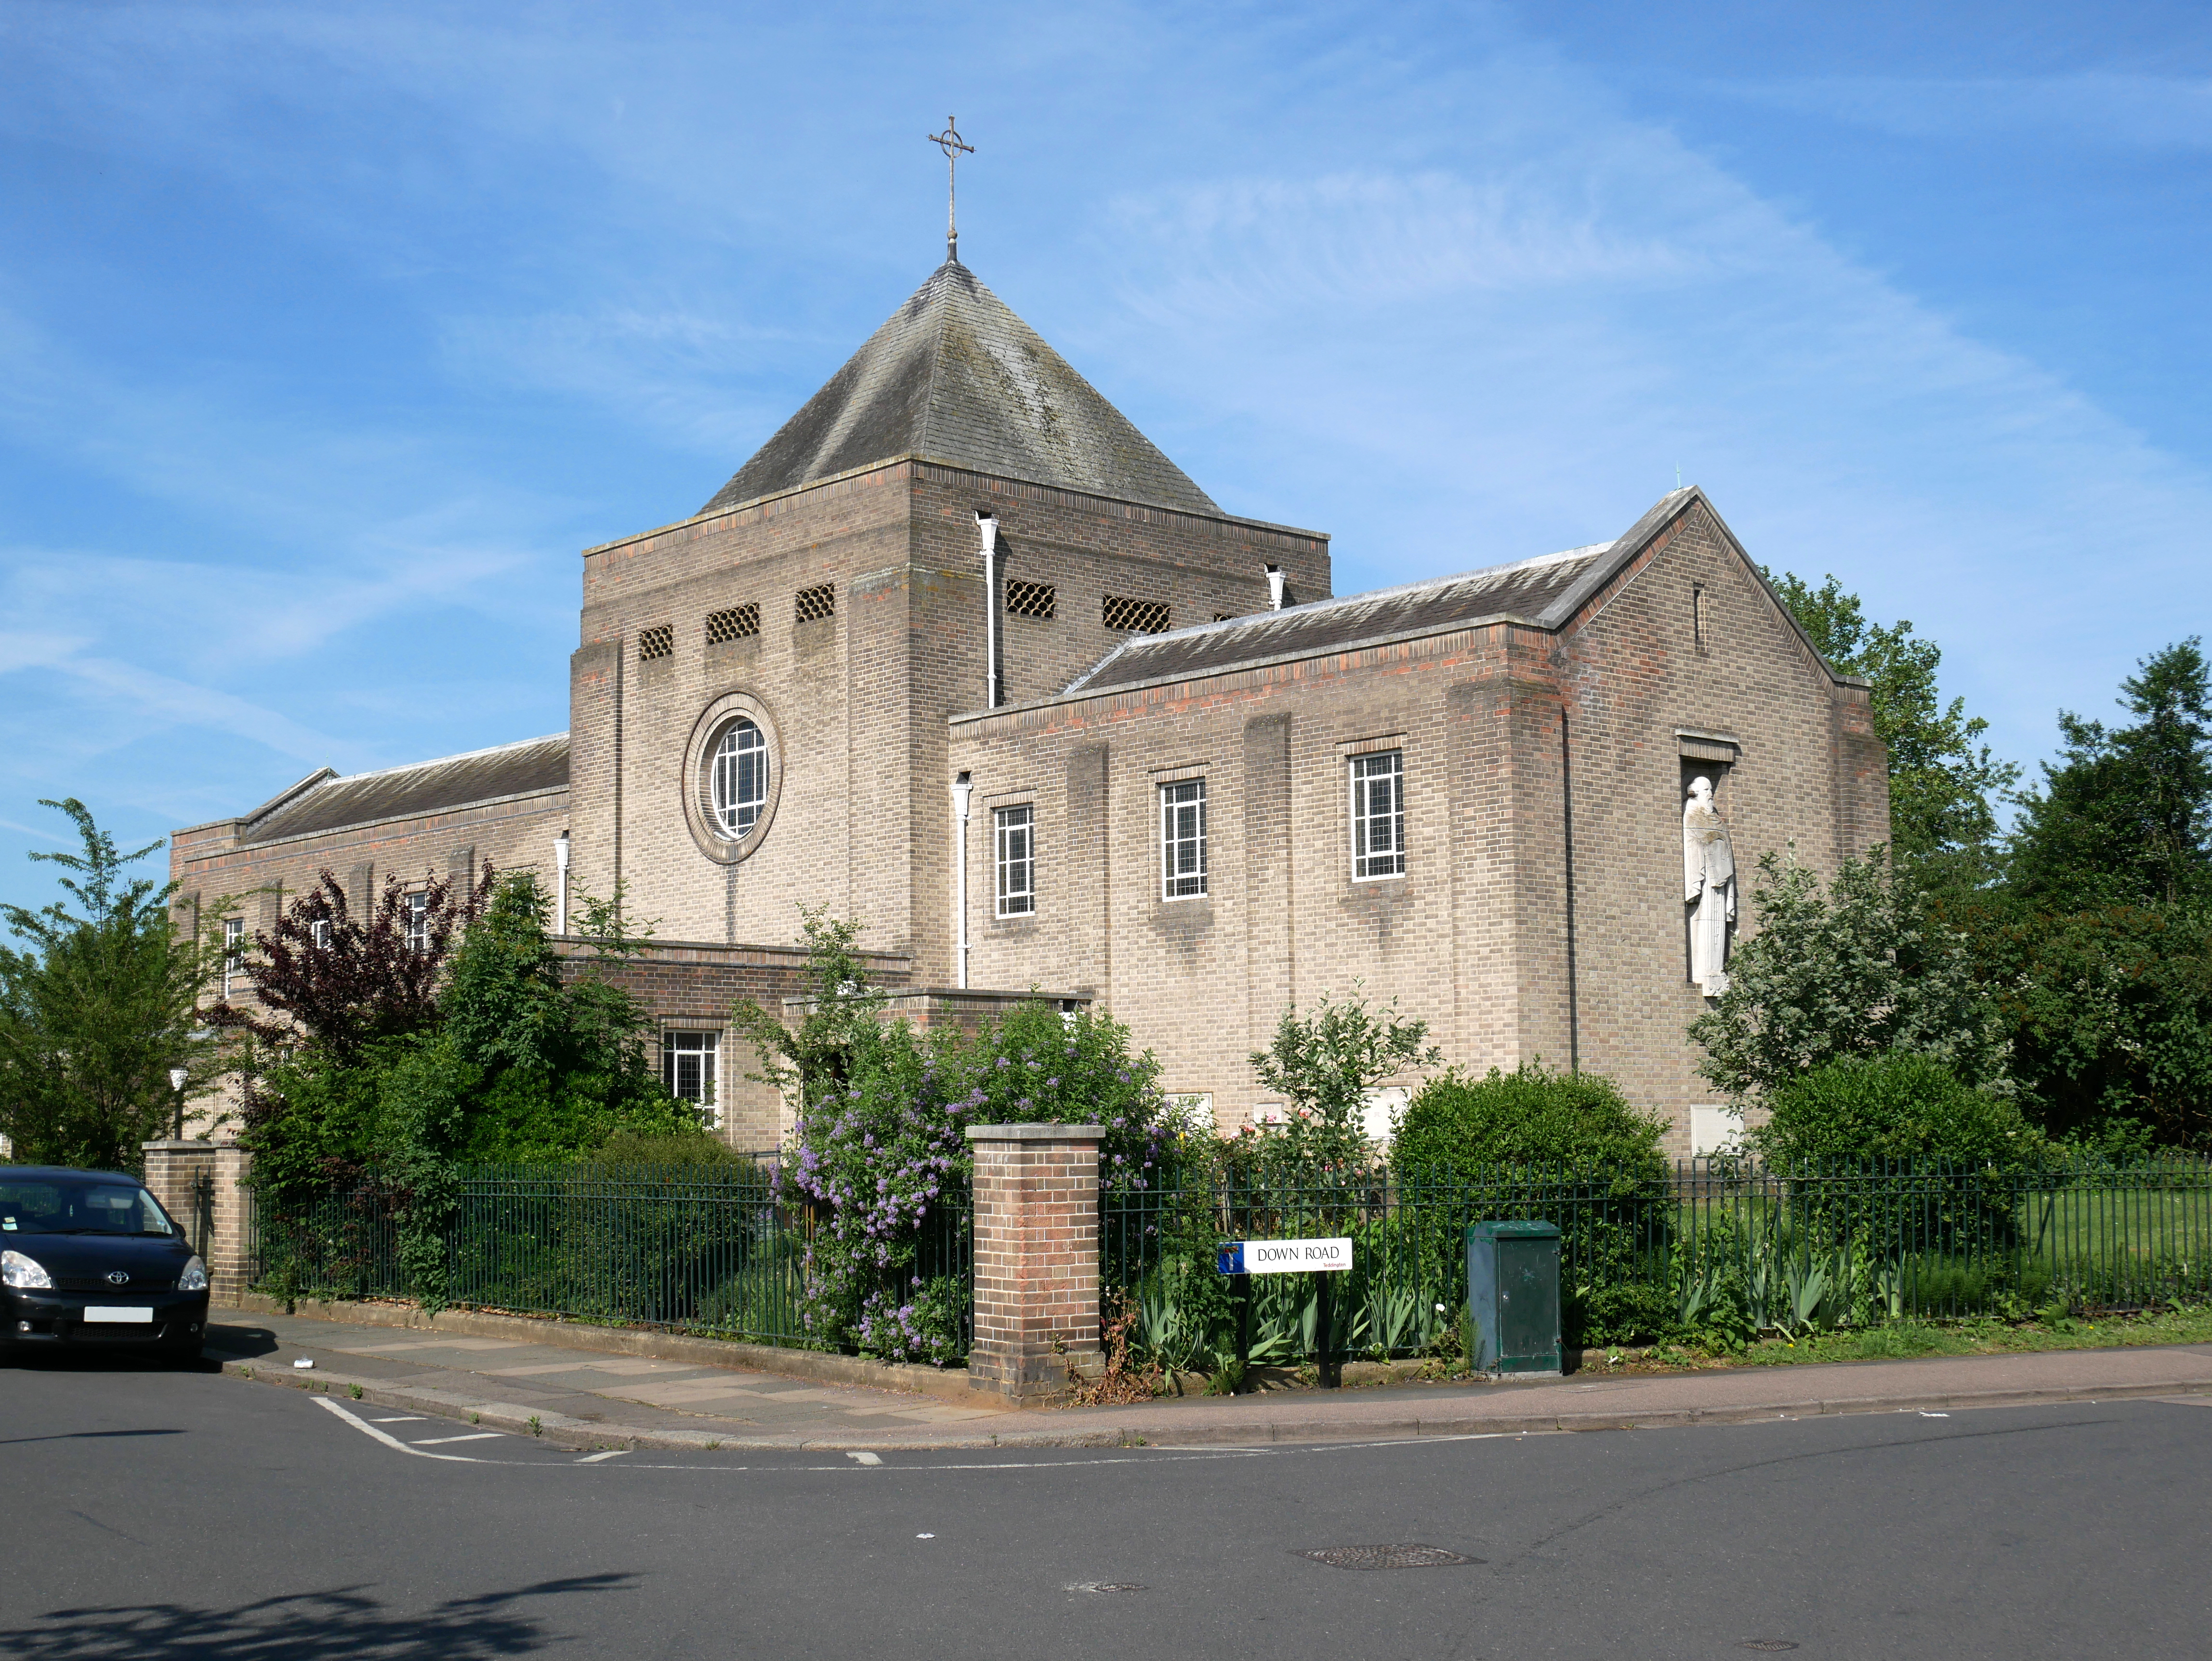 St Mark's, Teddington